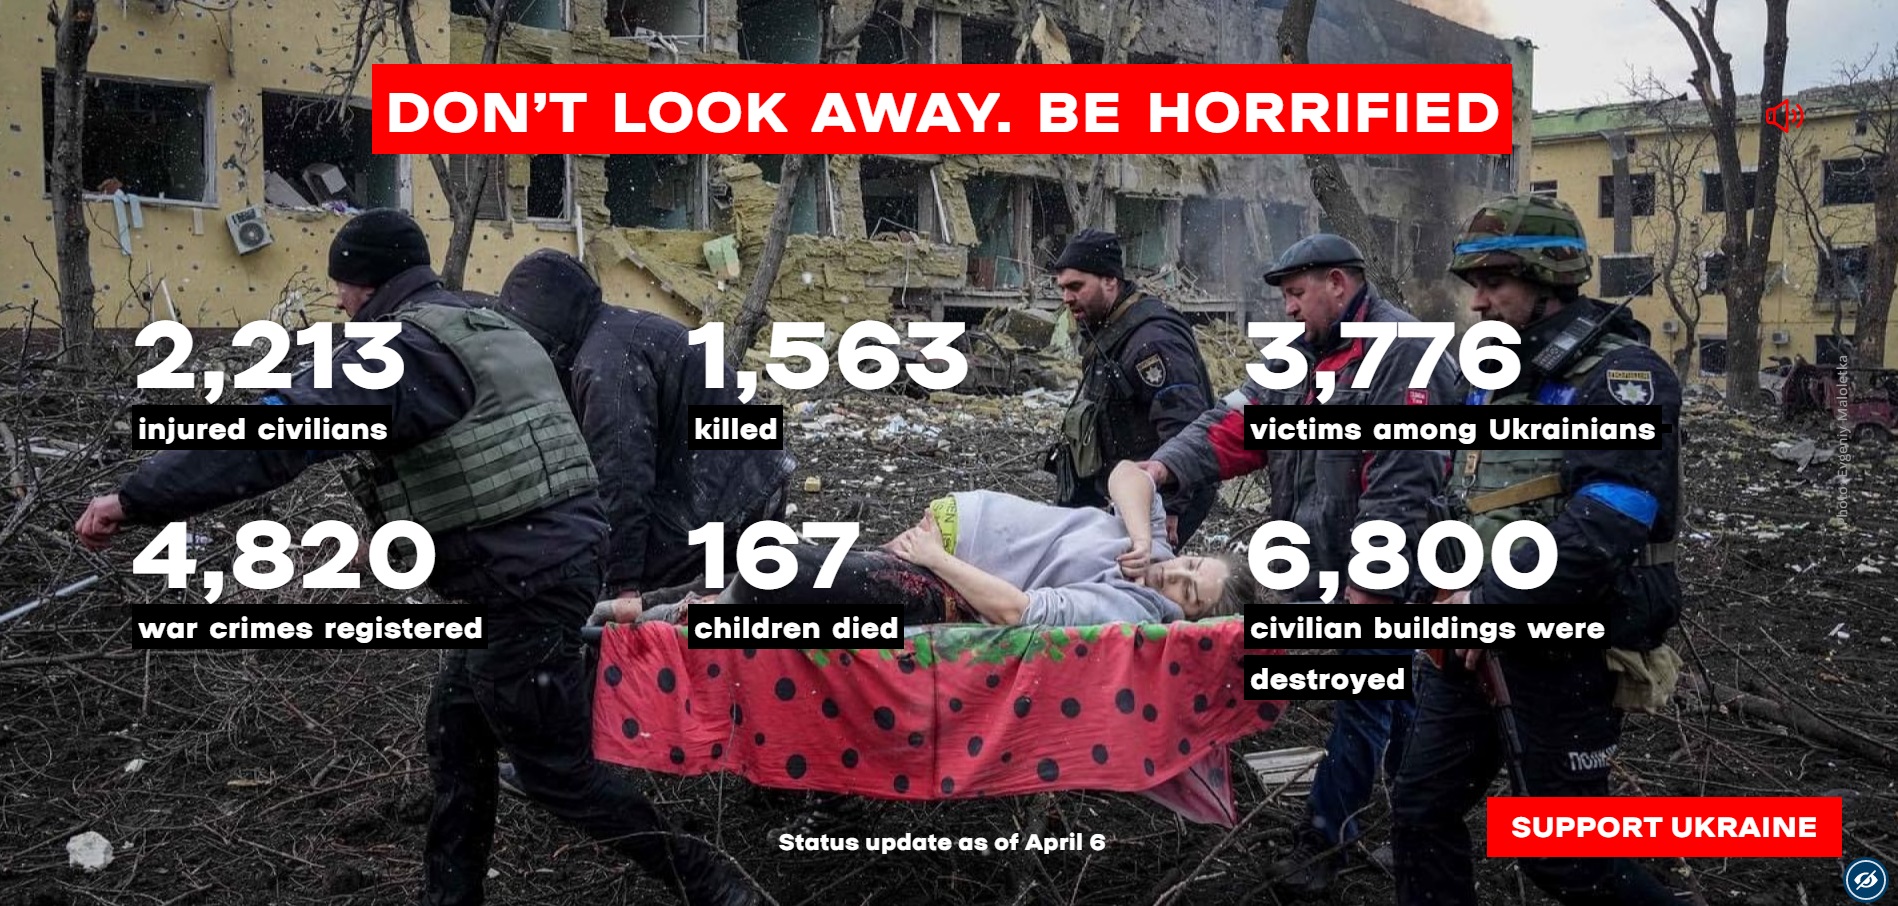 Las cifras de las víctimas son actualizadas a diario. "No mires a otro lado. Horrorízate", instan